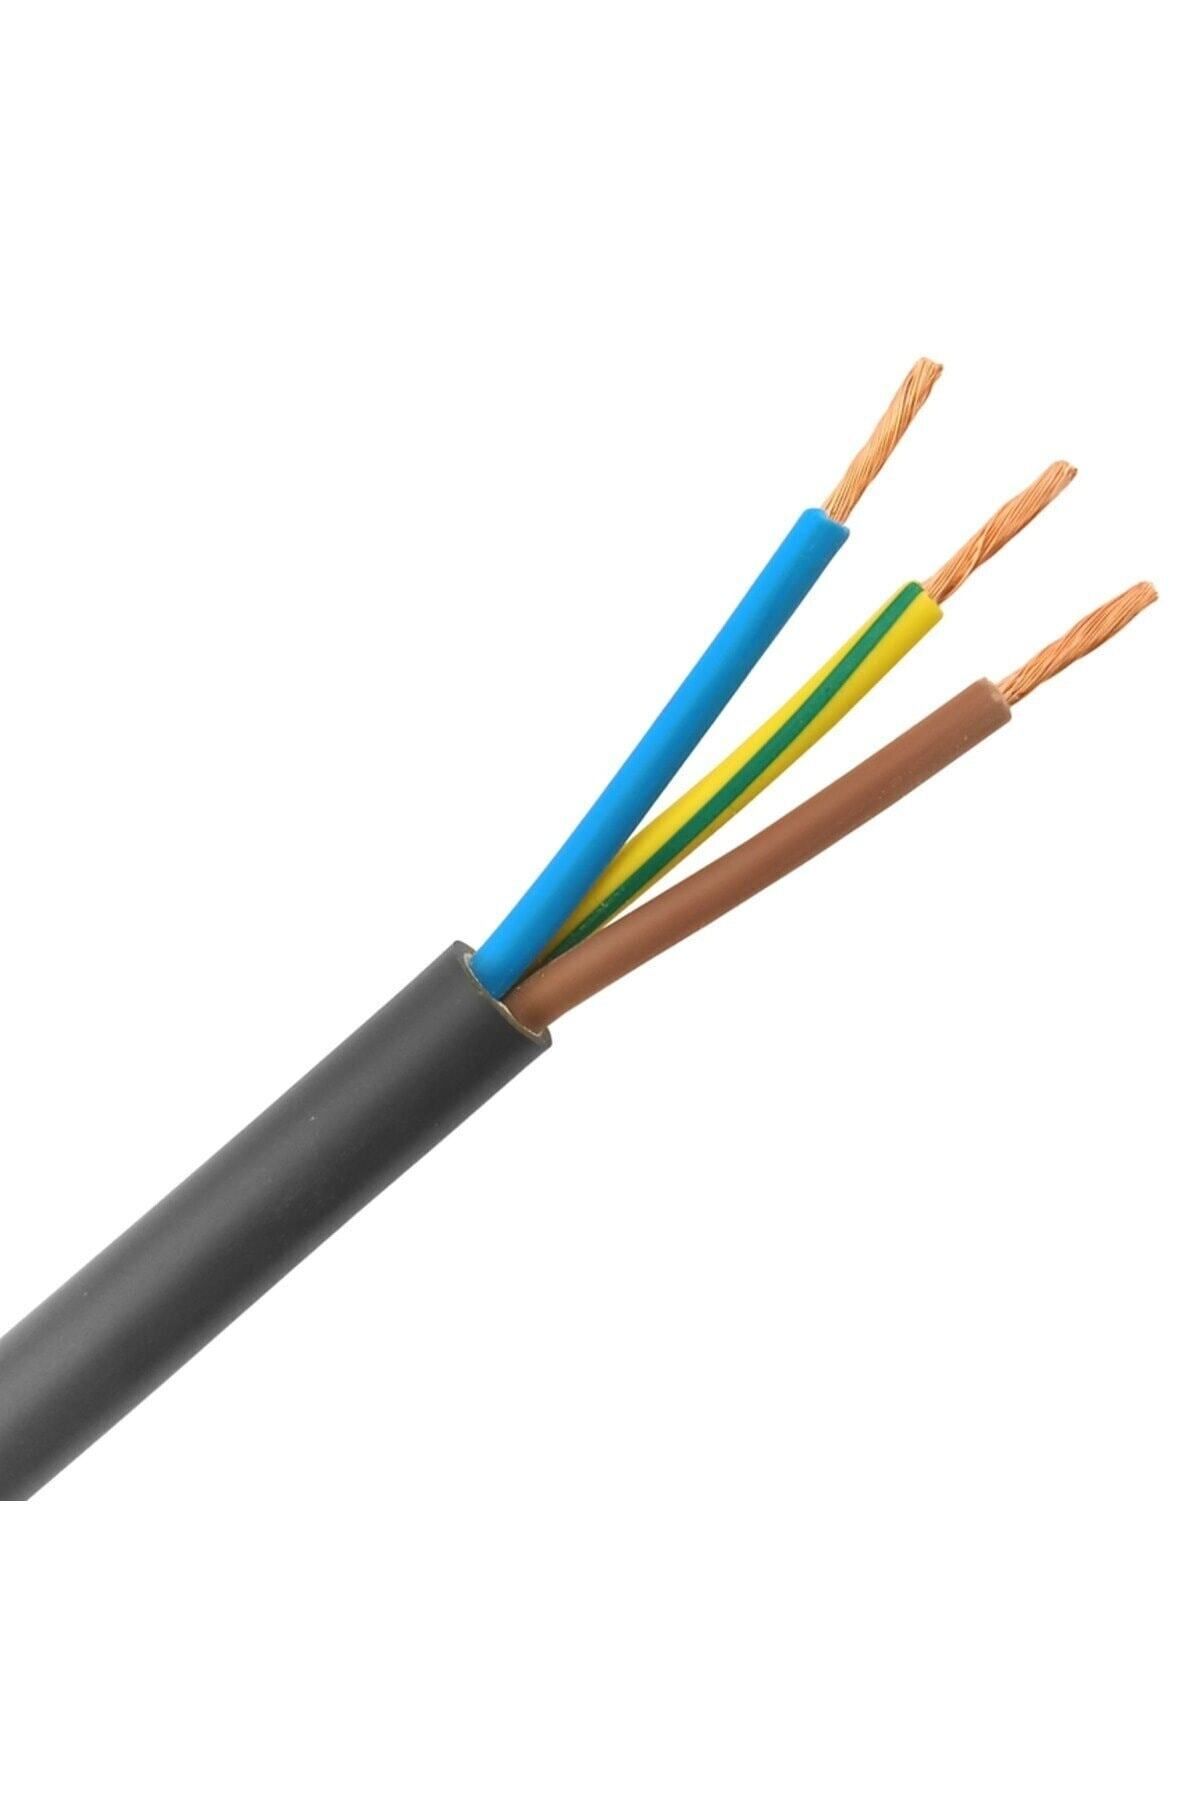 ÖZNUR 3x2,5mm Ttr Çok Telli Tam Bakır Kablo 1 Metre - 3'lü 2,5'luk Kablo - Siyah Renk